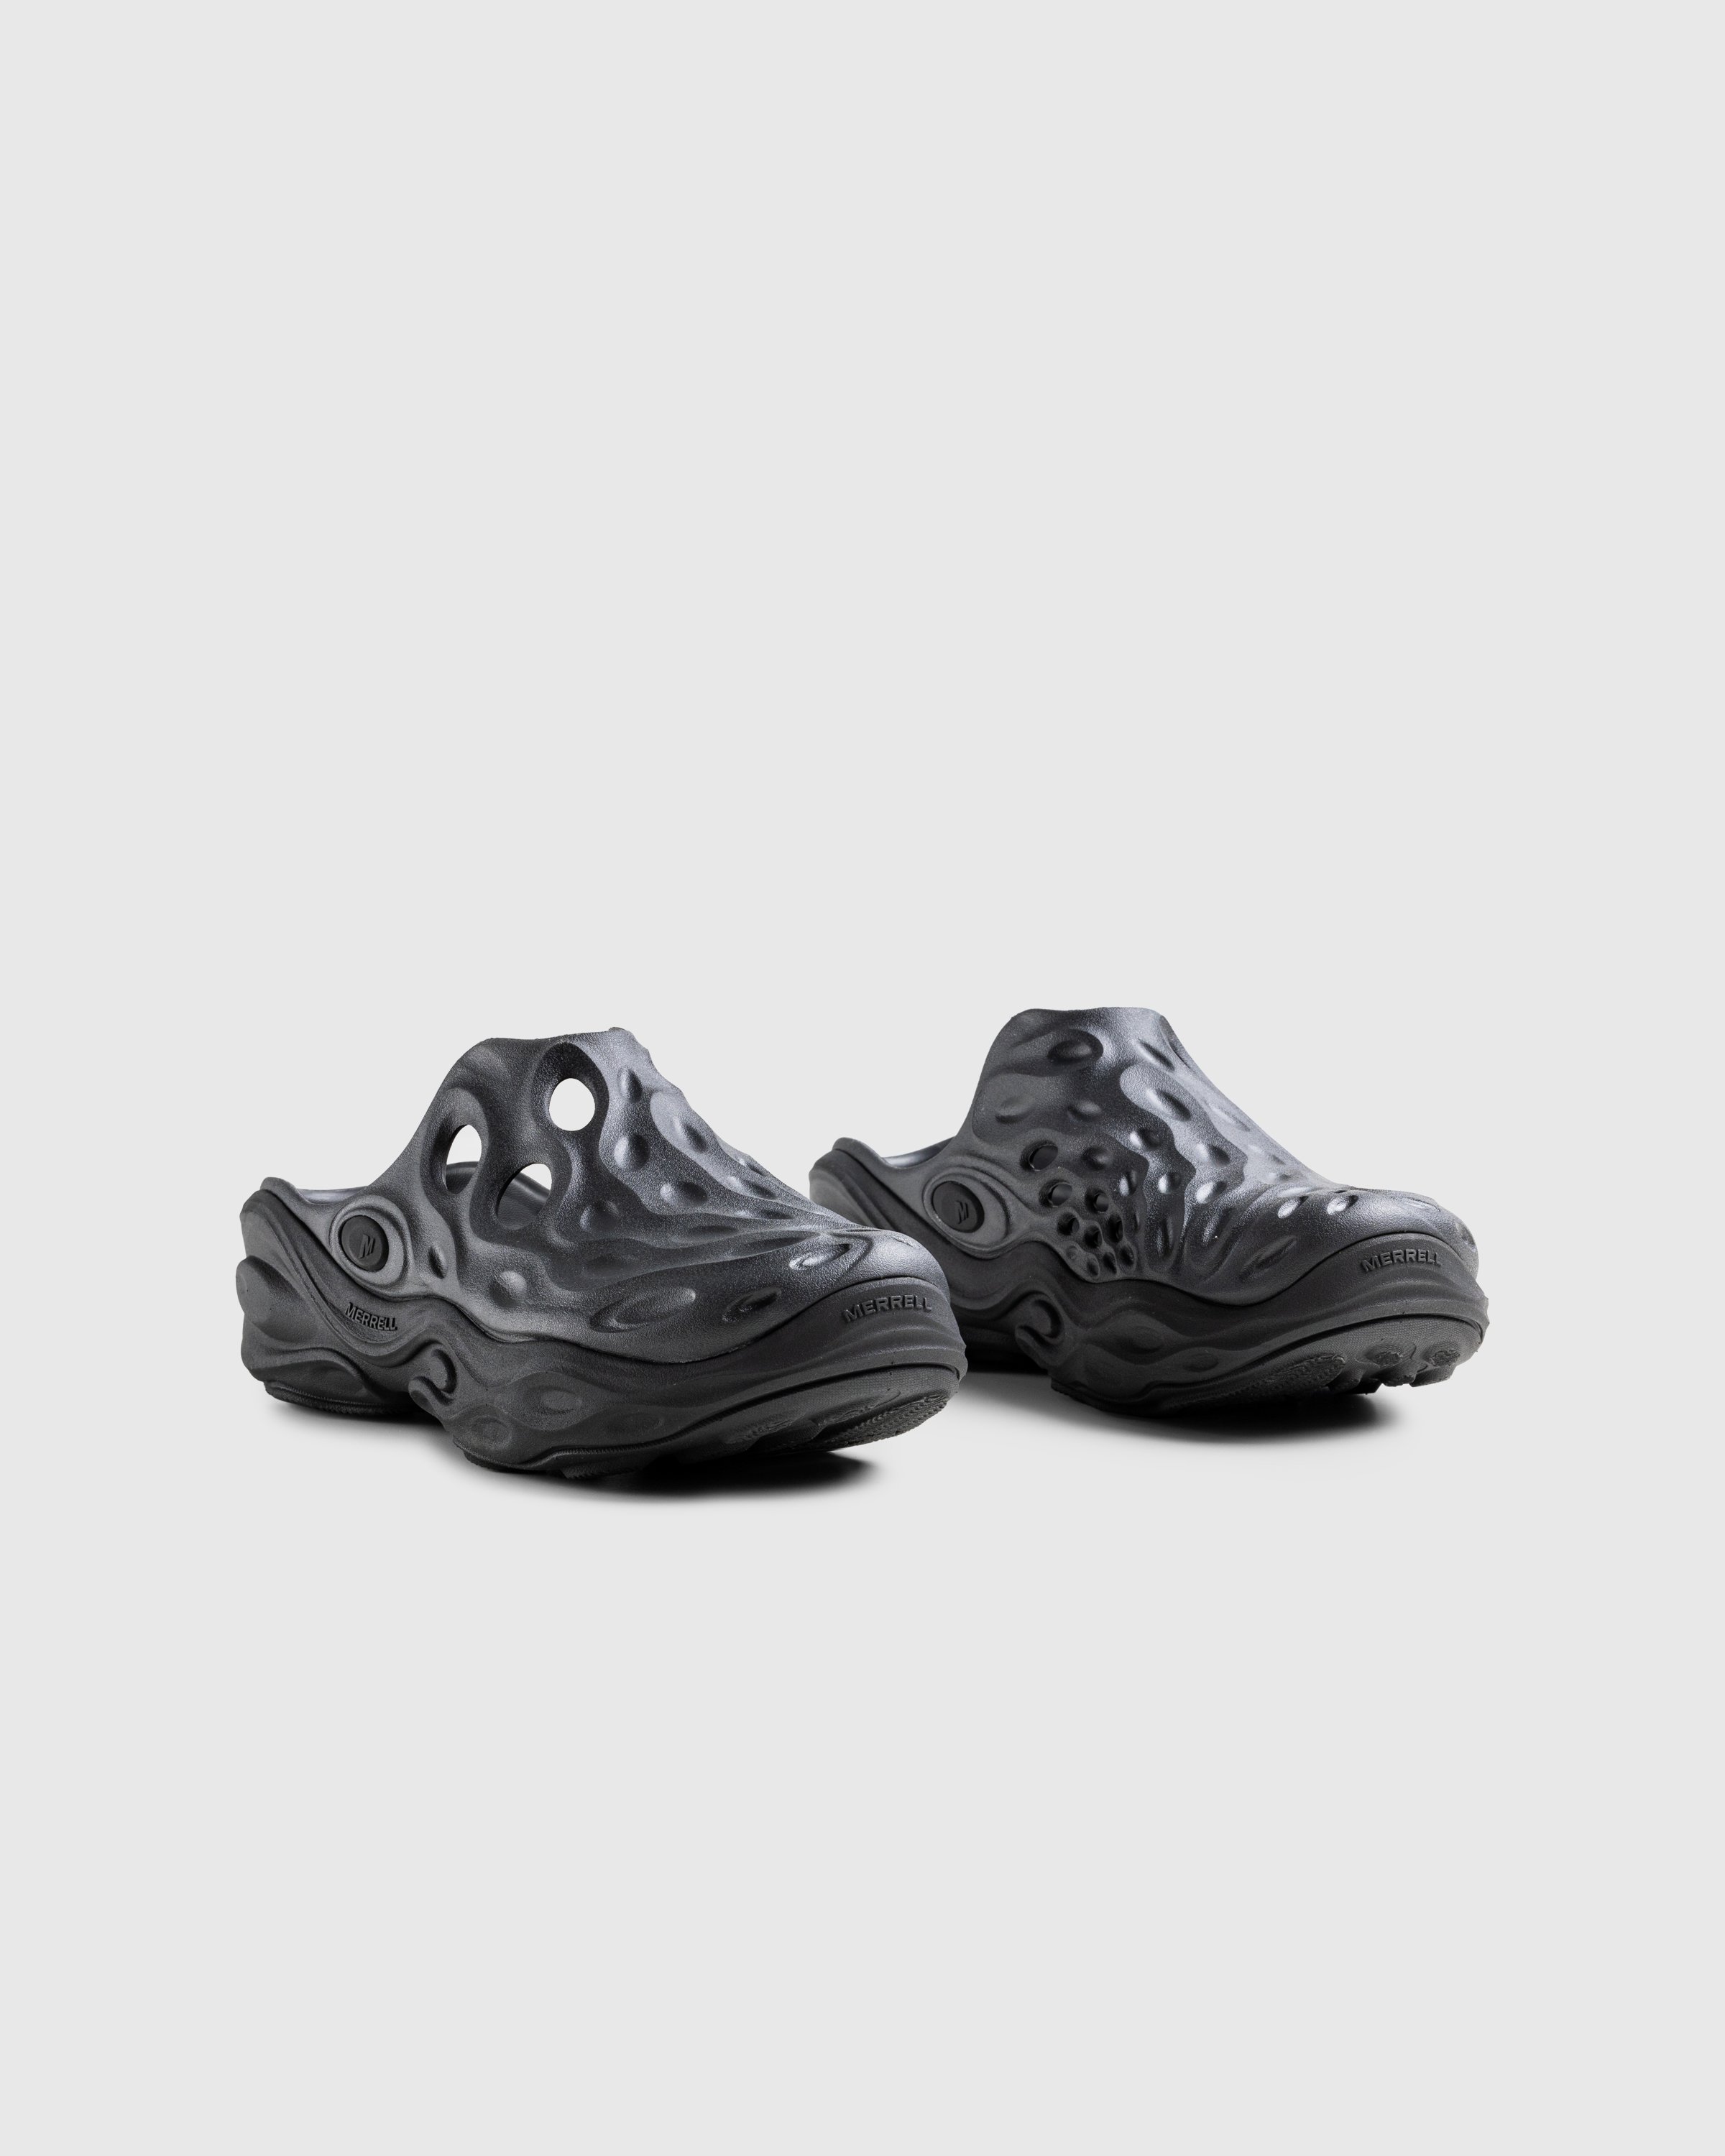 Merrell - HYDRO NEXT GEN MULE SE/TRIPLE BLACK - Footwear - Black - Image 3